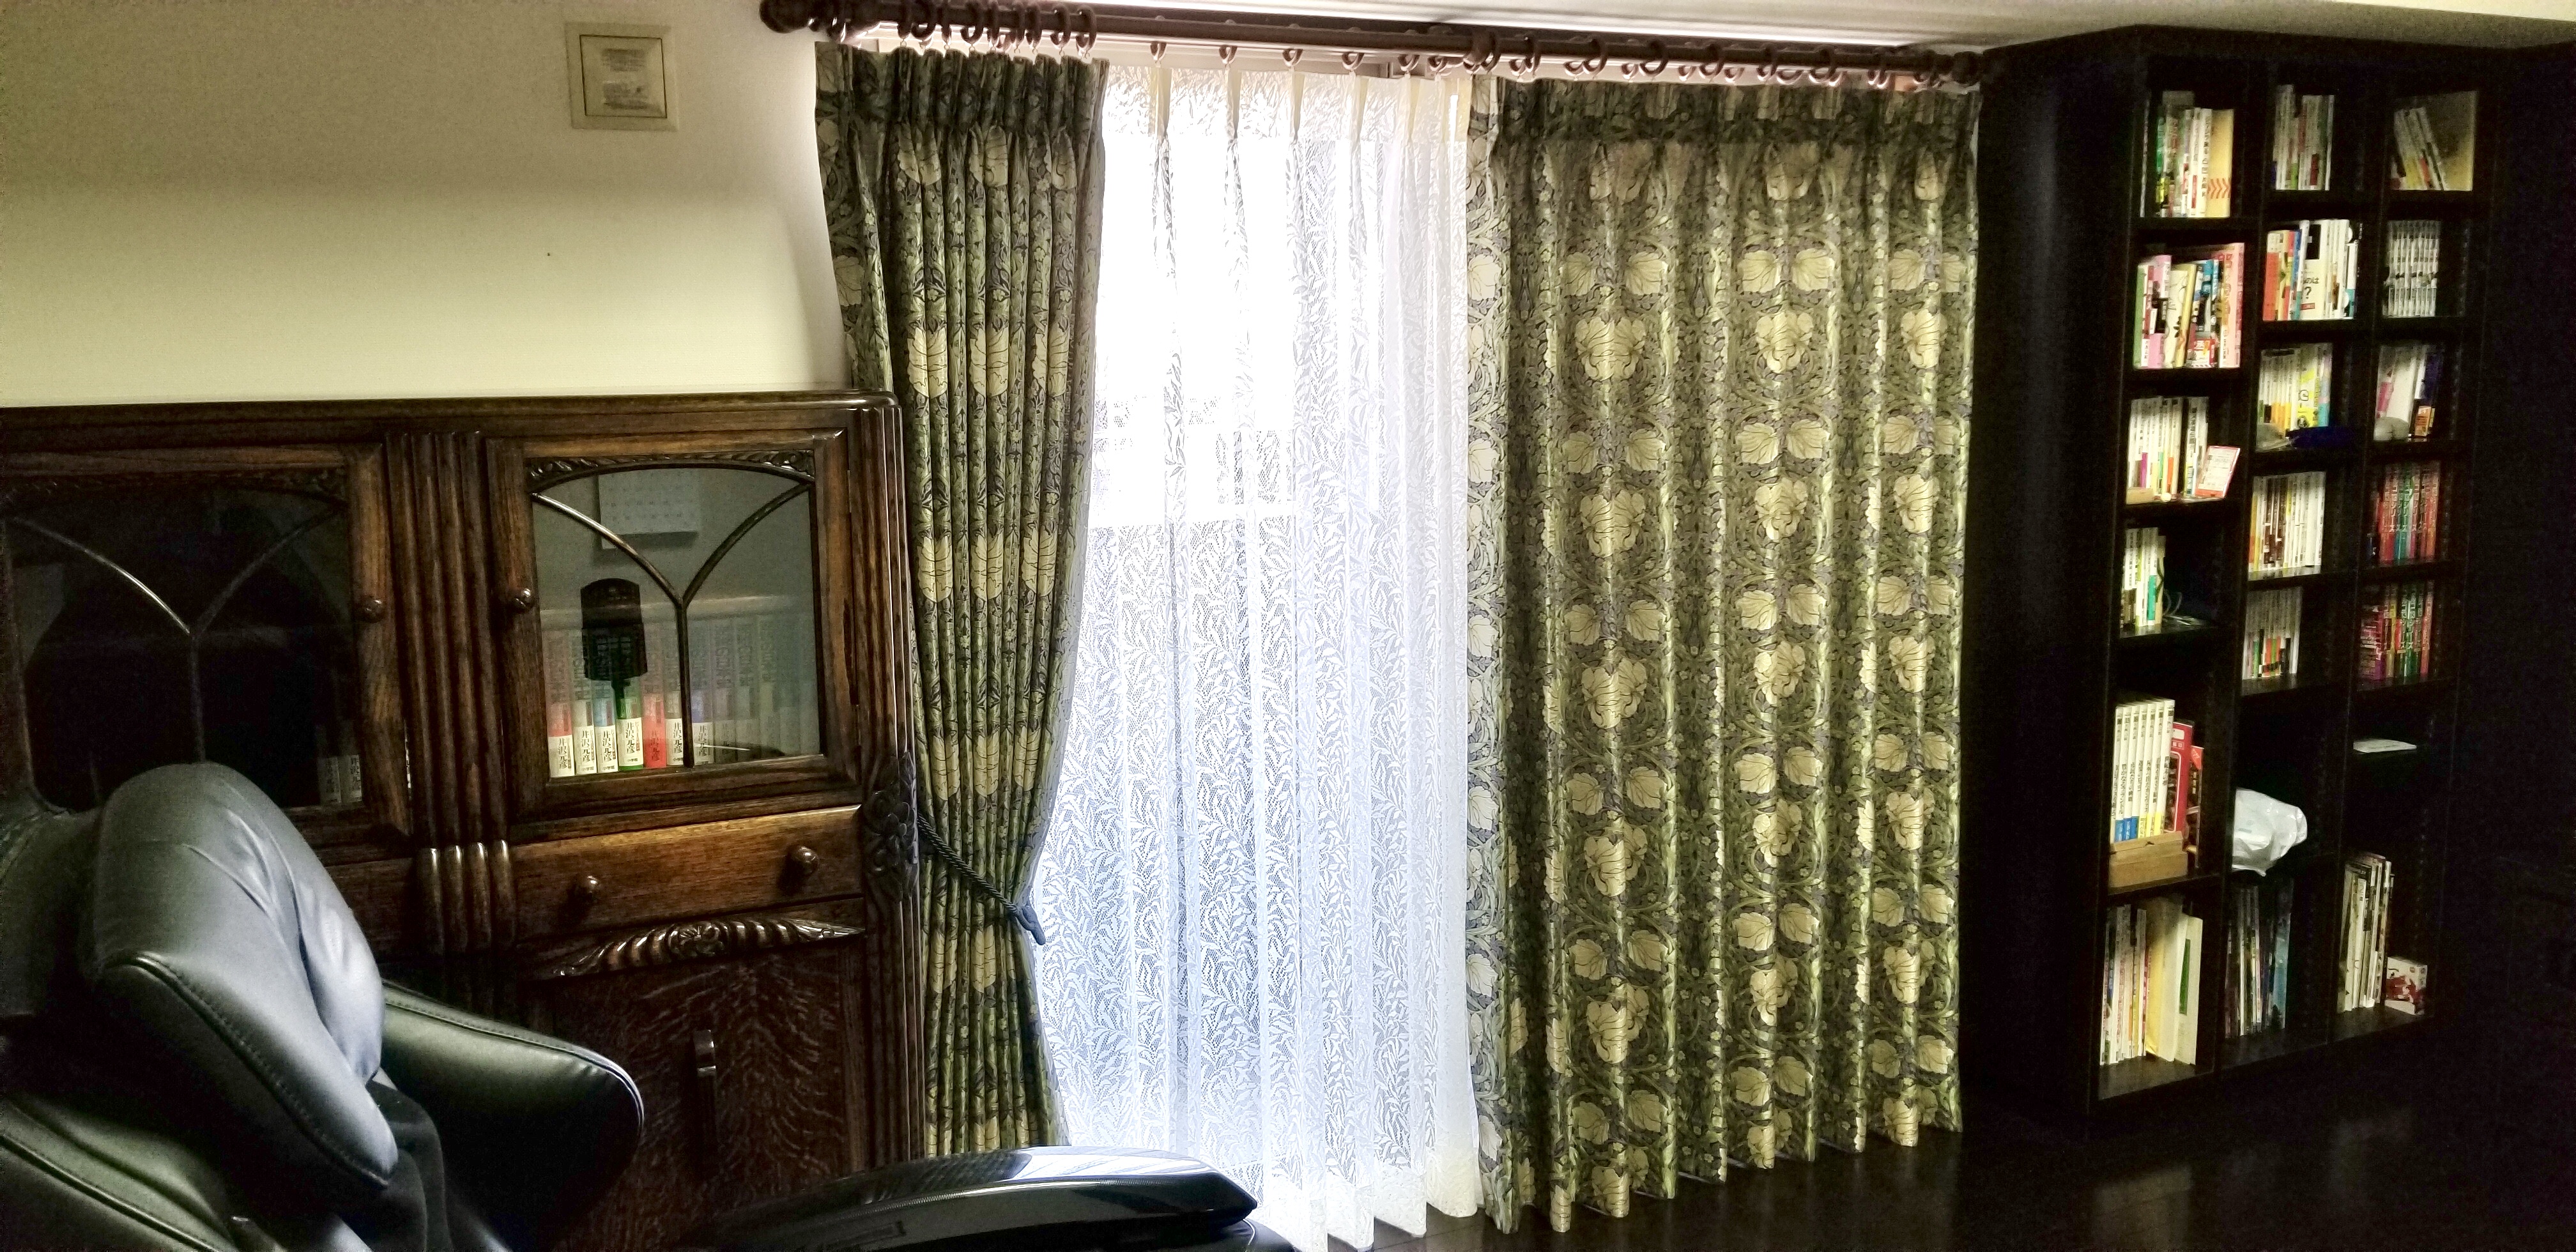 アンティーク家具とウィリアムモリスのカーテン